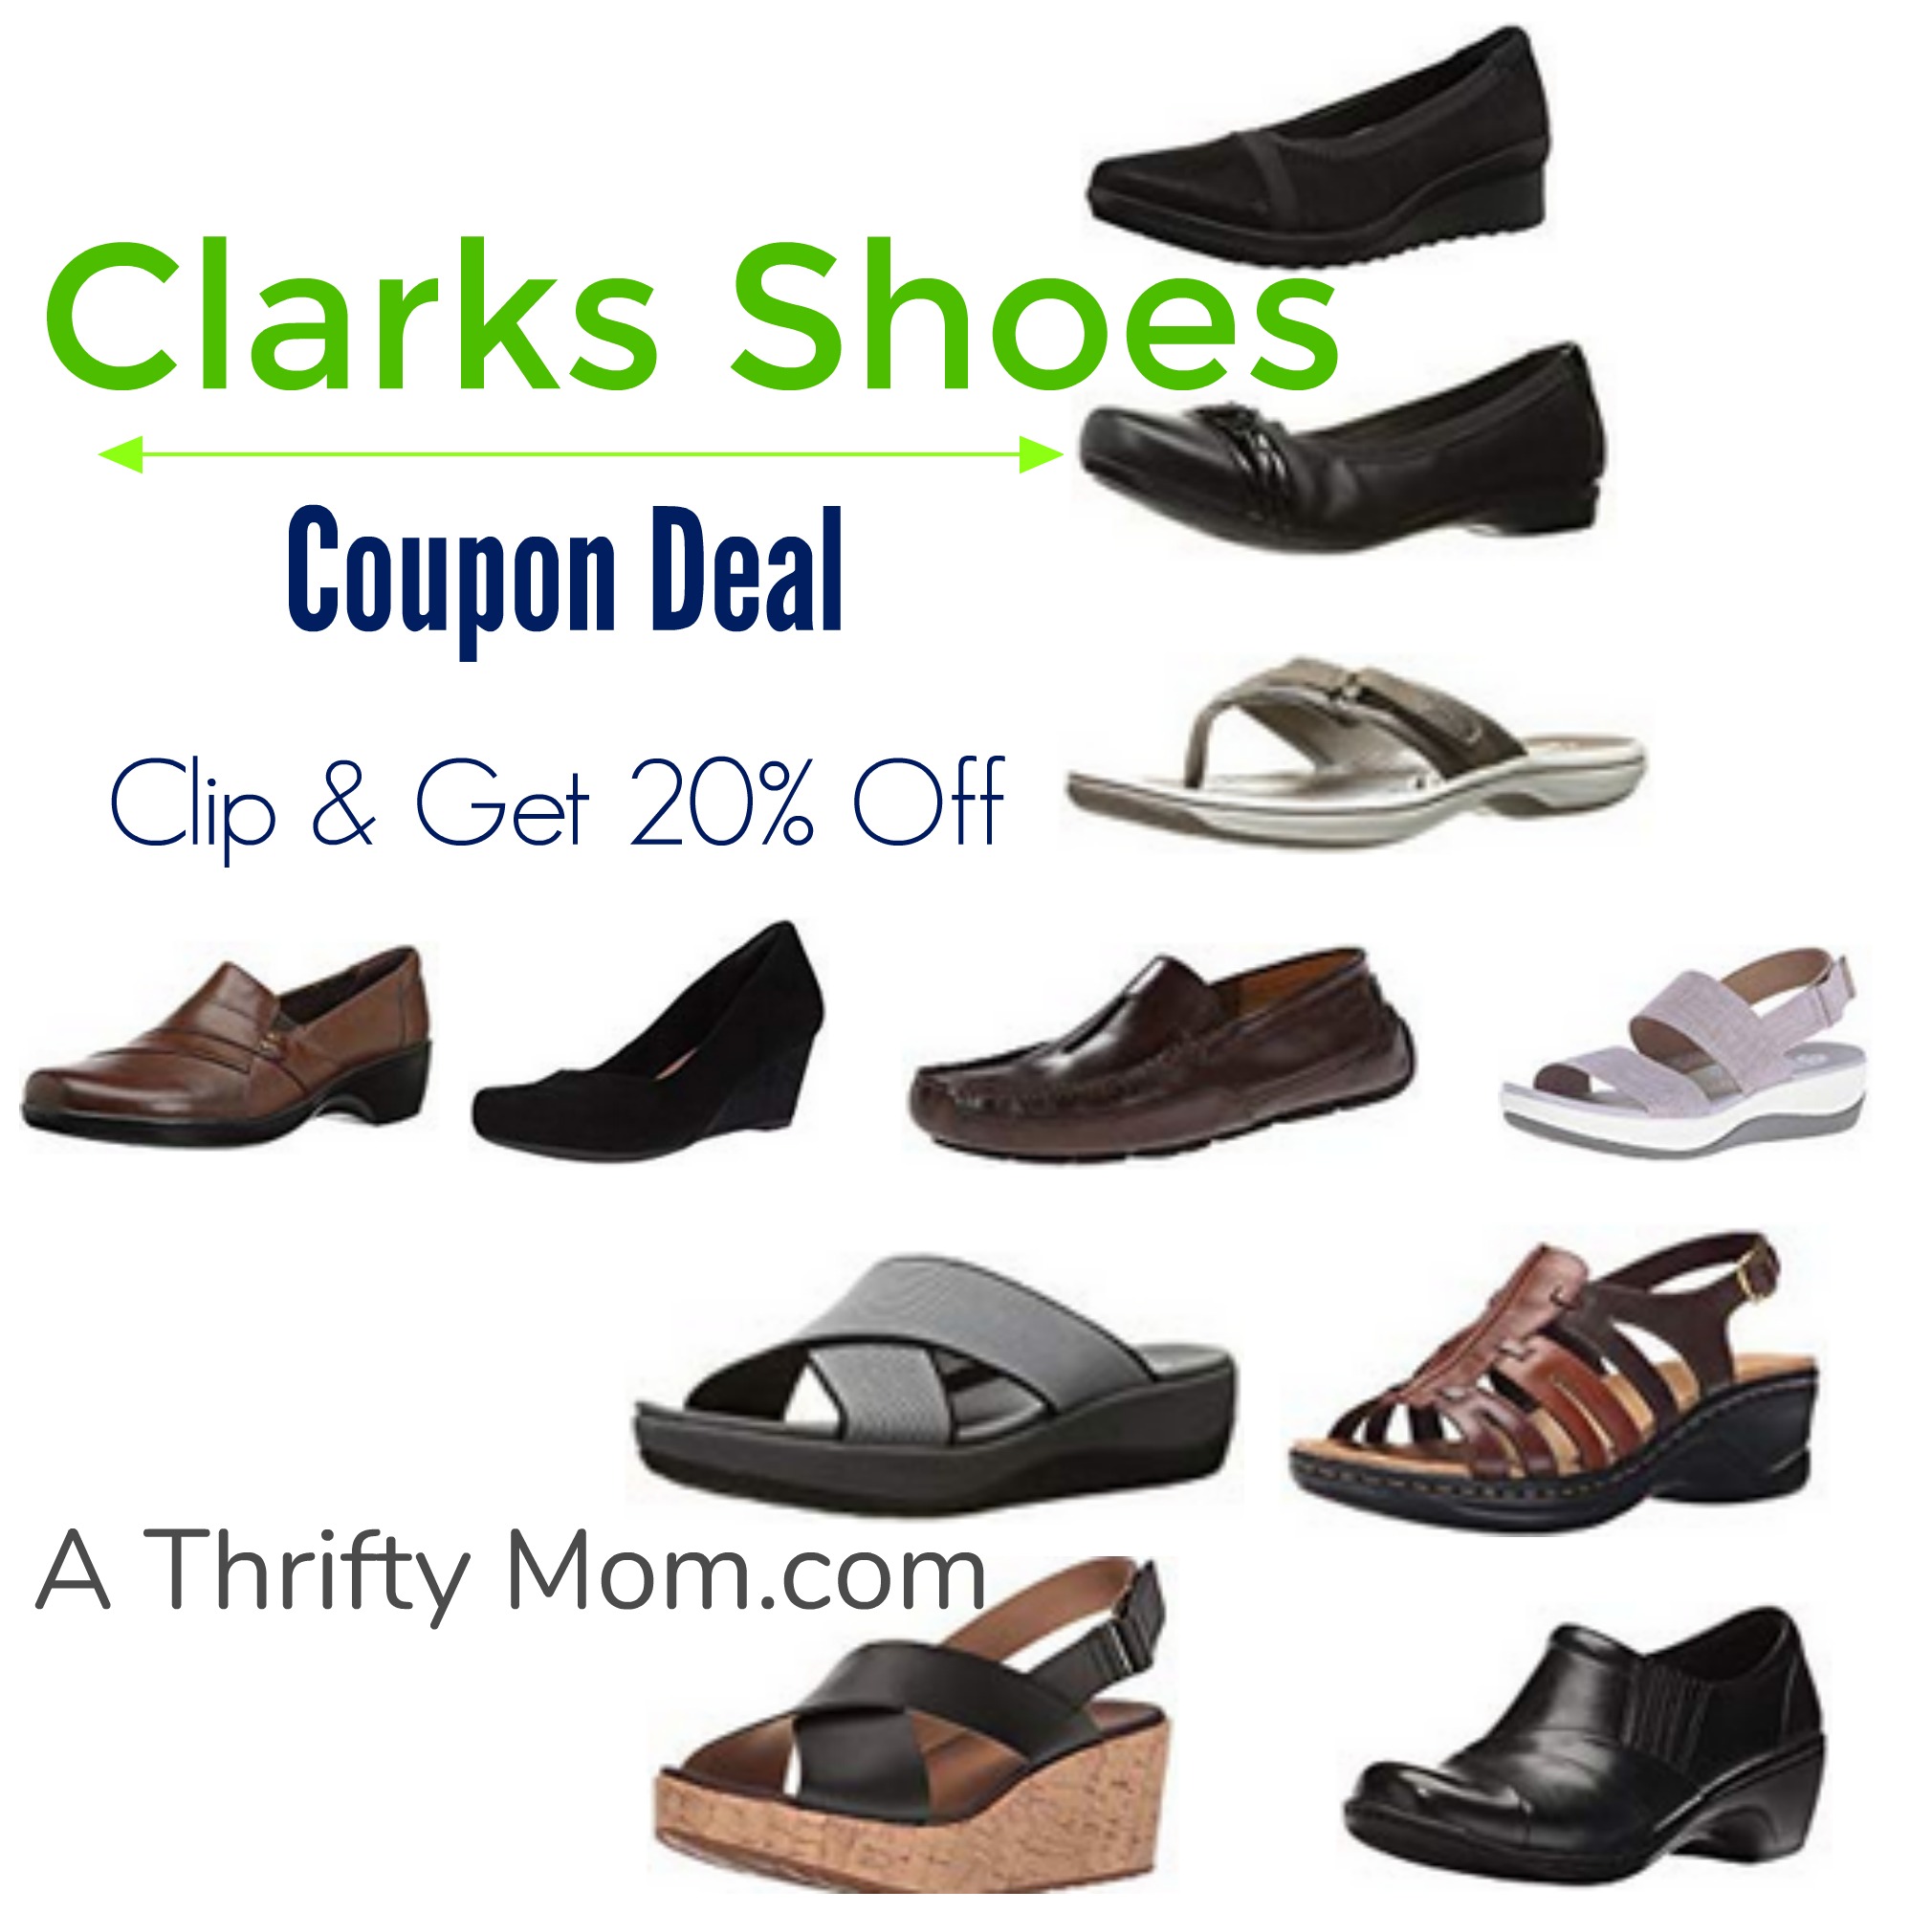 clarks shoes voucher code 2016